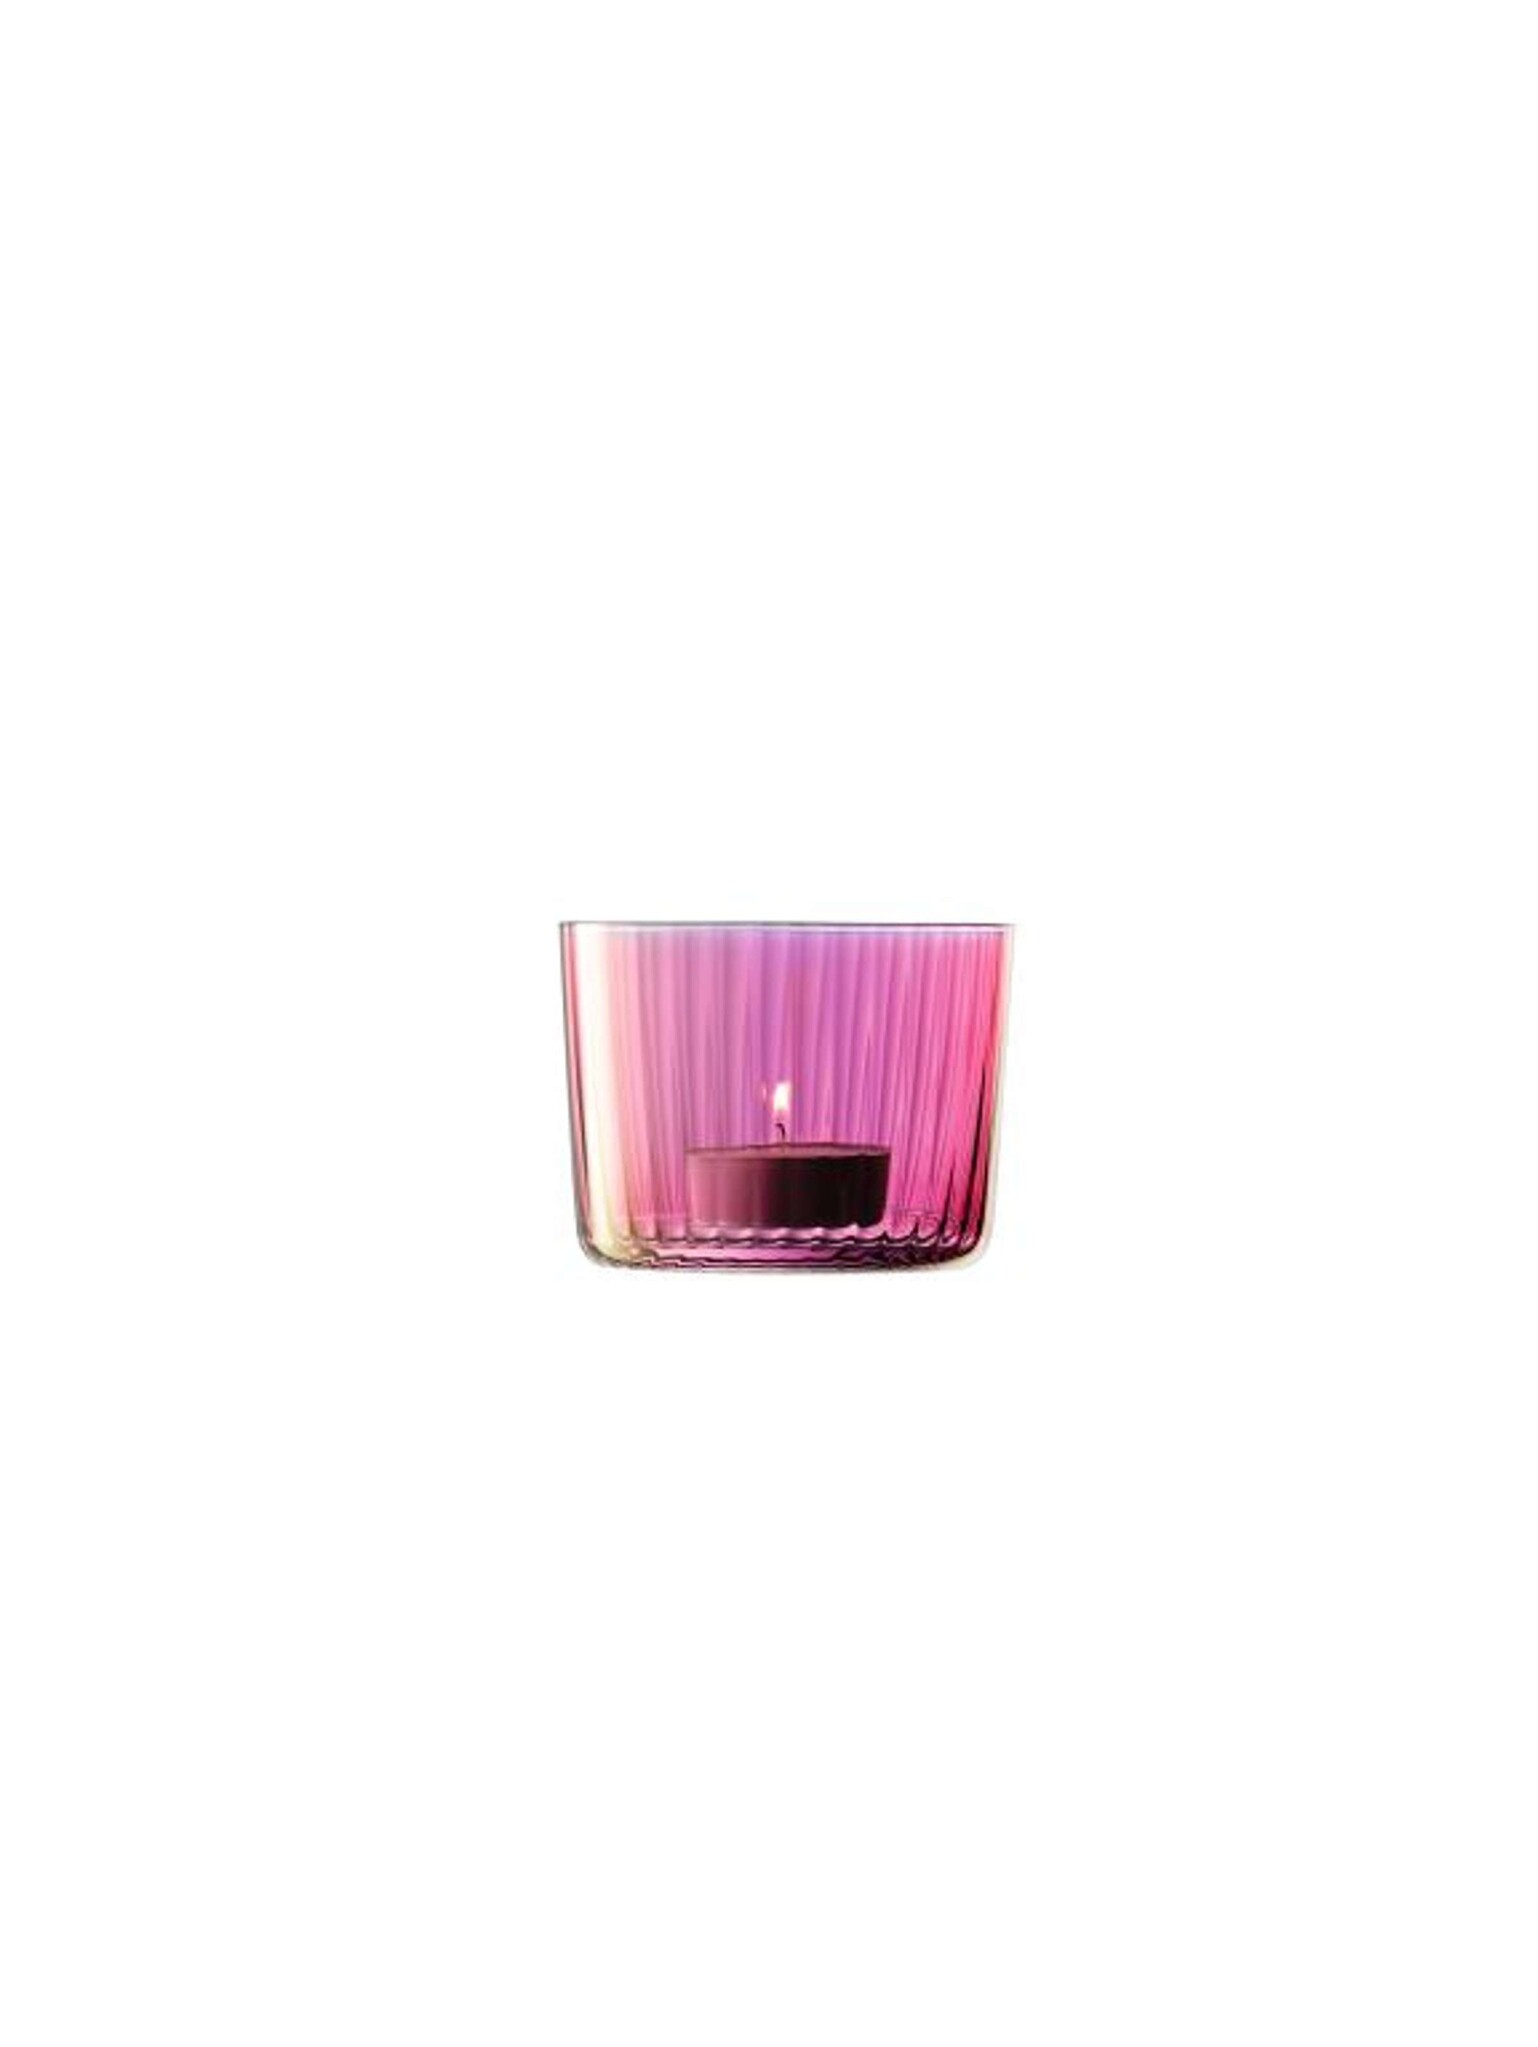 L.S.A. Gems Teelichthalter 6 cm Satz von 4 Stück